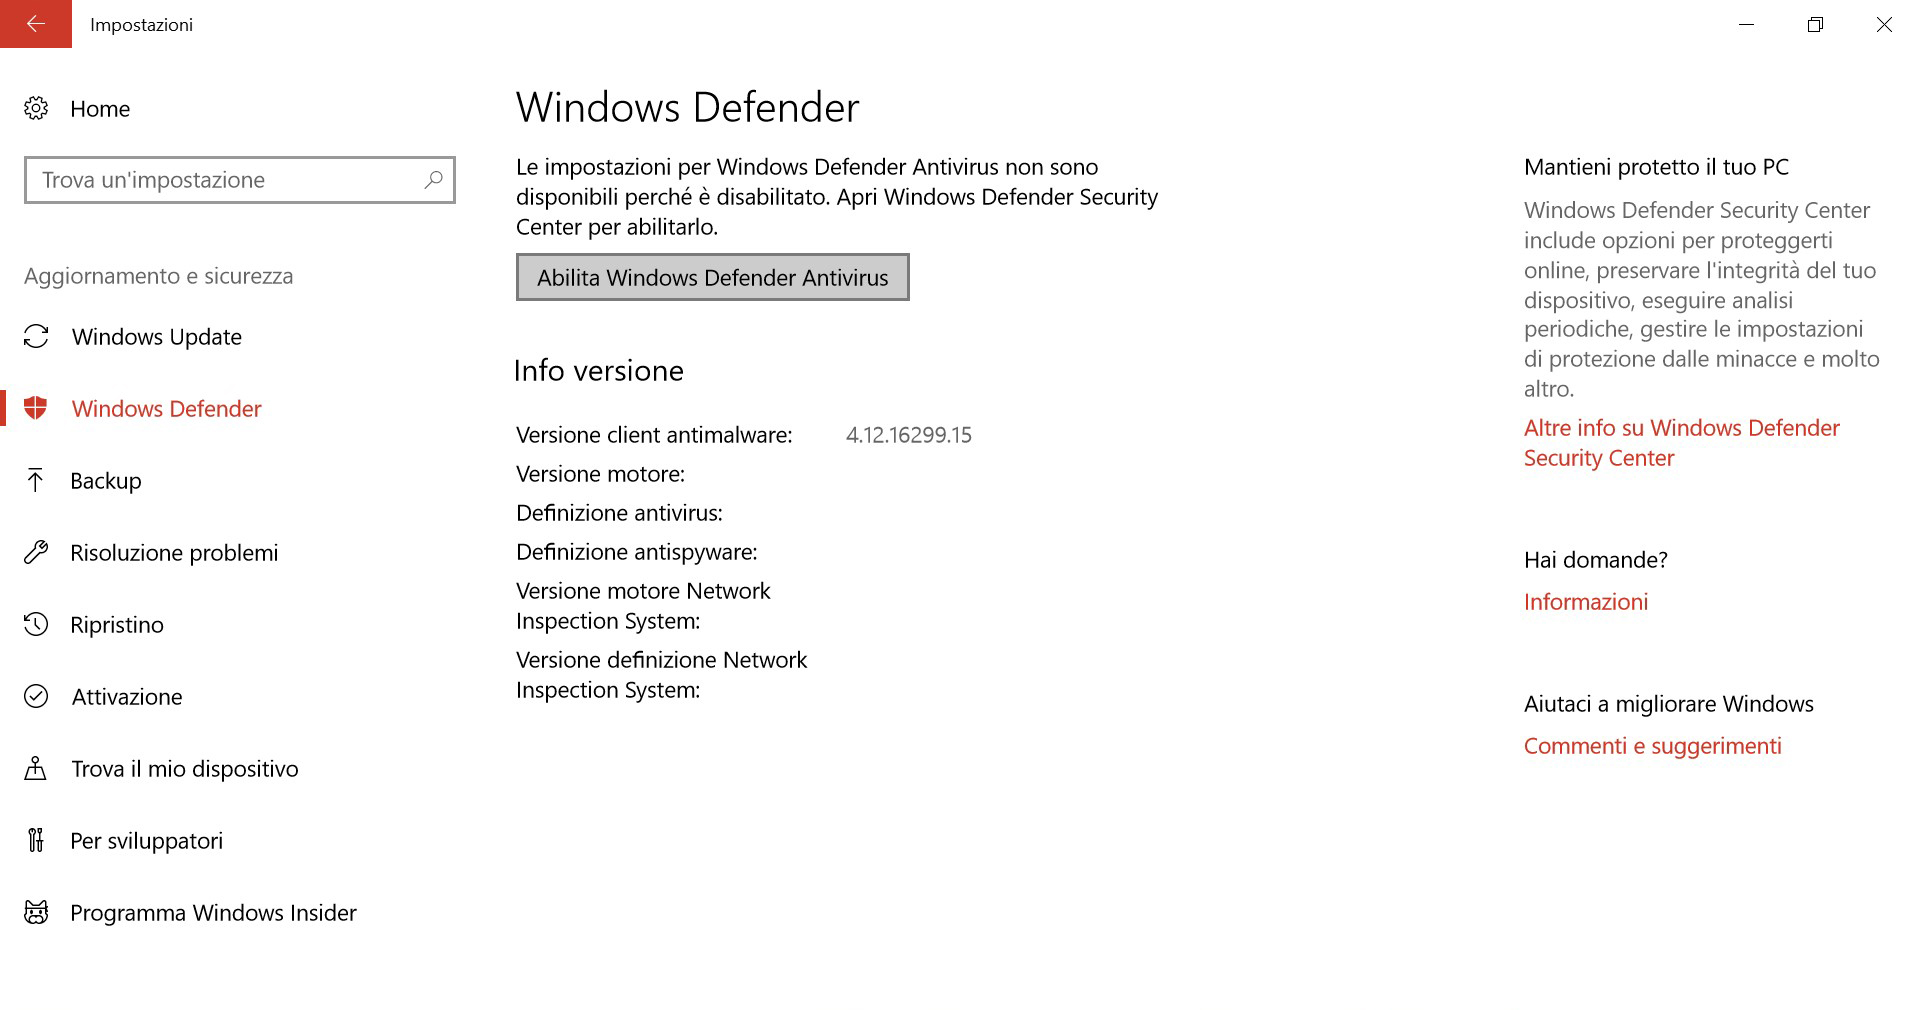 Come funziona Windows Defender